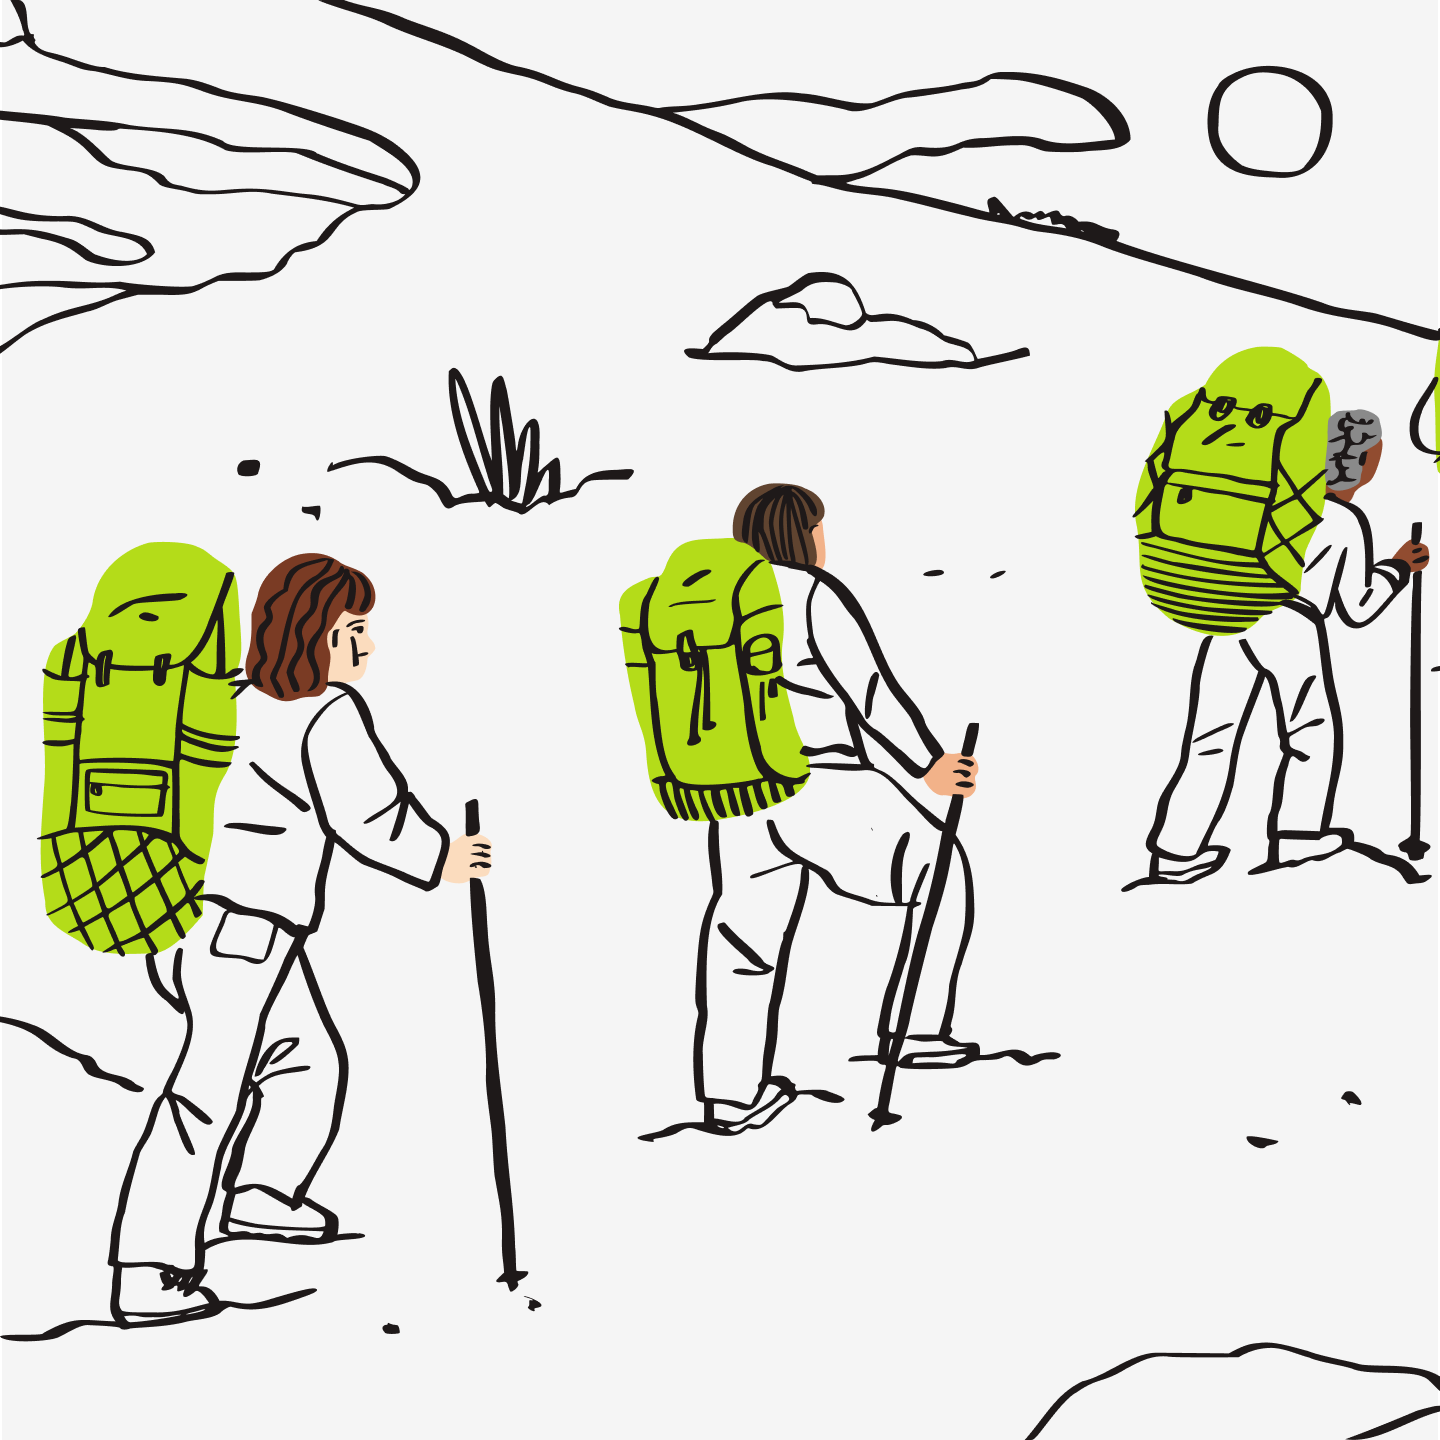 Een illustratie van mensen die een berg oplopen.